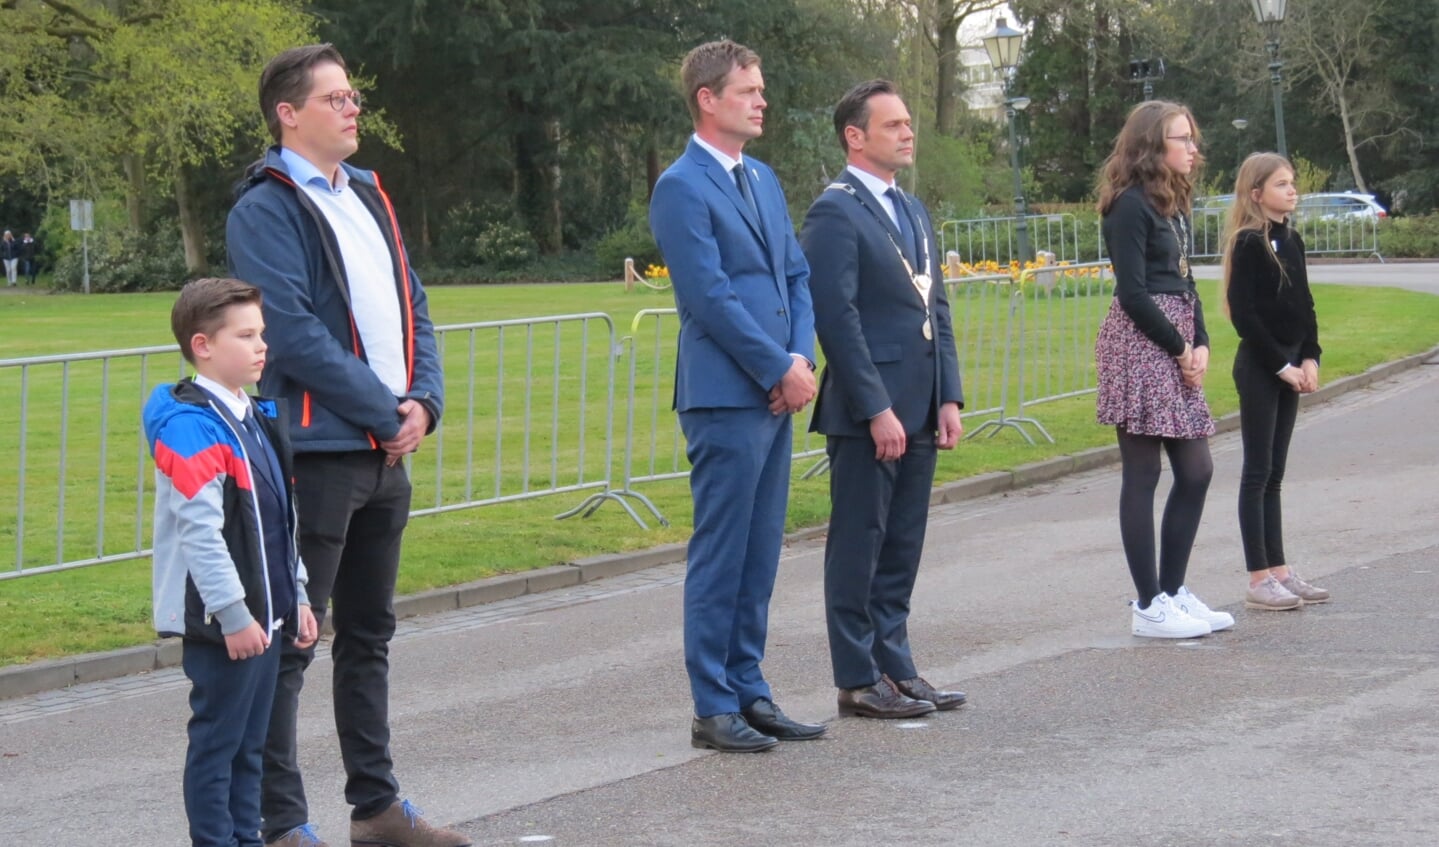 De kransen werden gelegd door burgemeester Sjoerd Potters en echtgenoot, Wietse Goedhart en zoon Koen en kinderburgemeester Carmen met vriendin Madeleine.